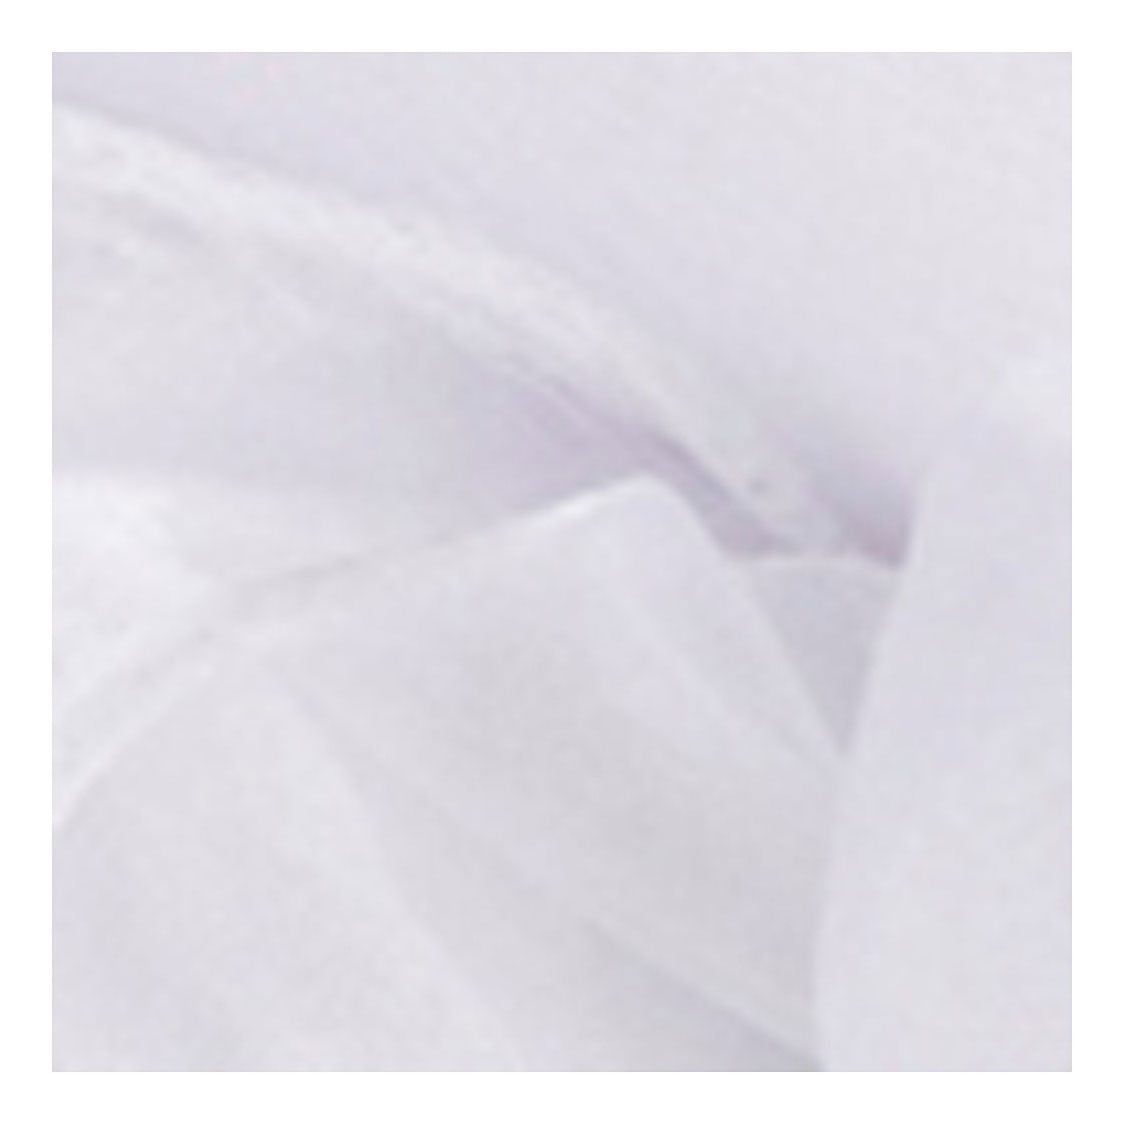 Creativ Company Organza Fabric White, 10m